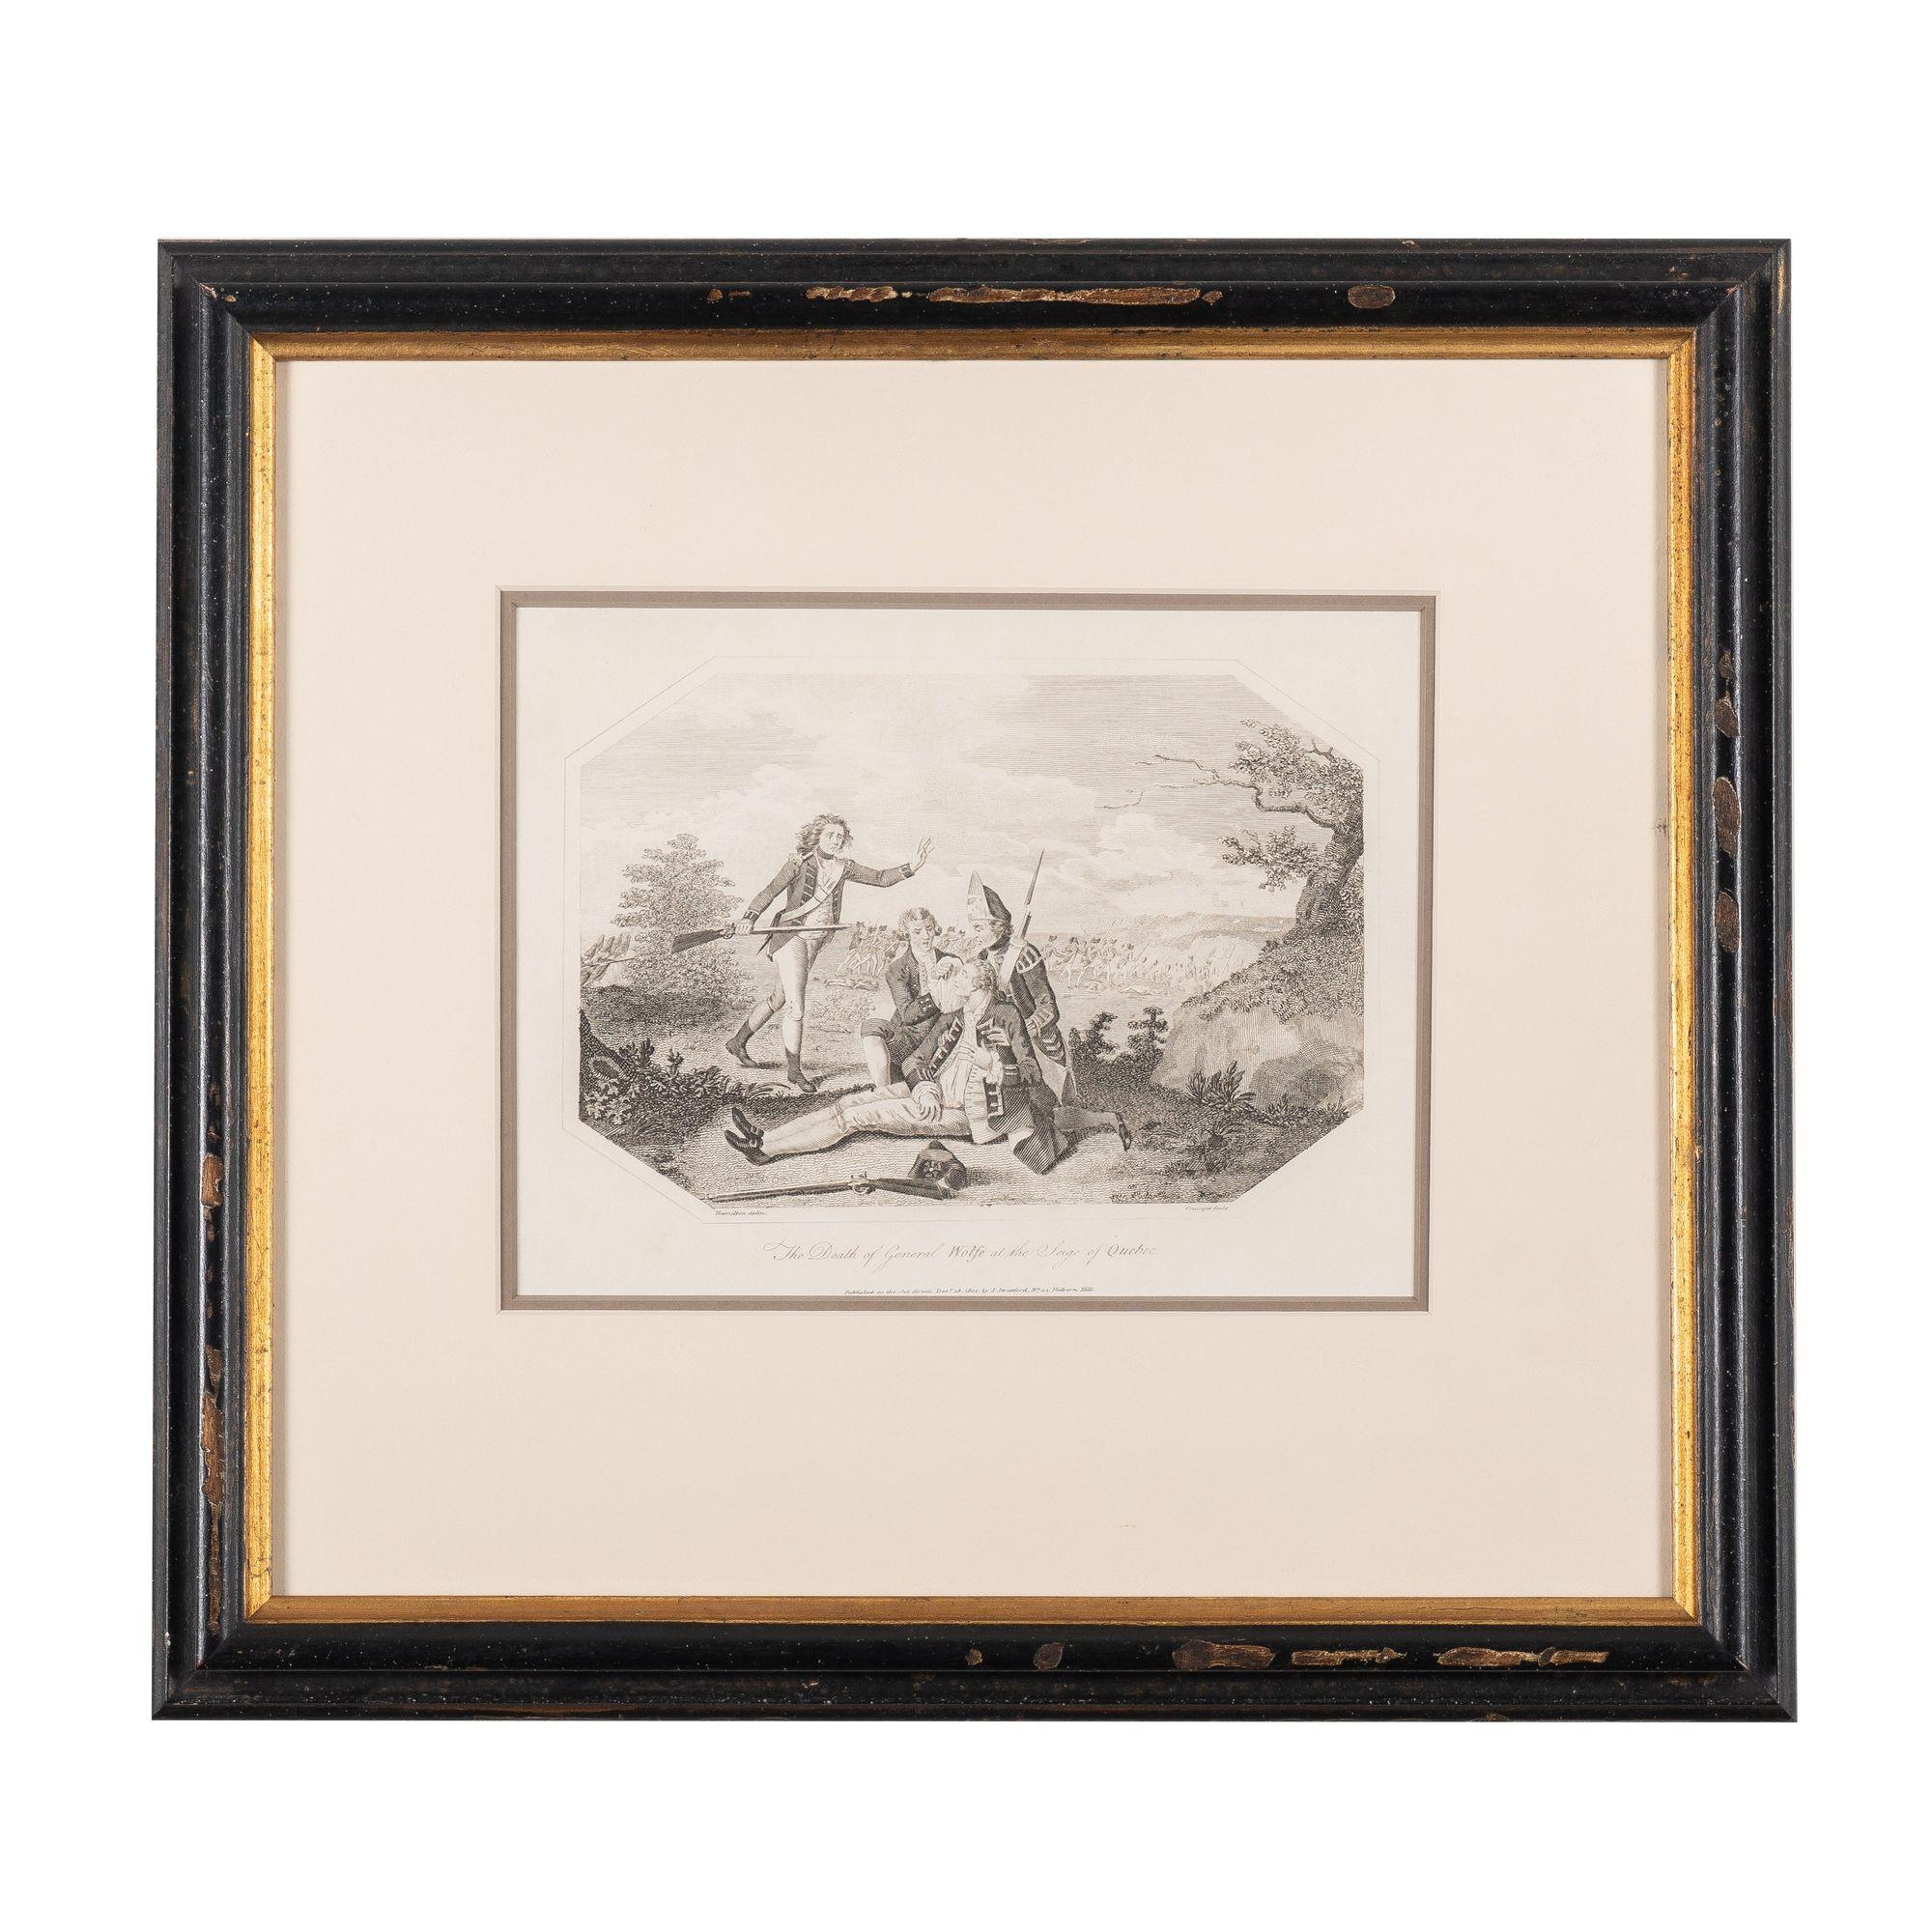 Paar Radierungen und Kupferstiche auf Bütten von William Grainger (1765-1809), nach William Hamilton.

Tod von General Wolfe bei der Belagerung von Quebec: Der General sitzt aufrecht, gestützt von einem Offizier, der neben ihm kniet, während ein